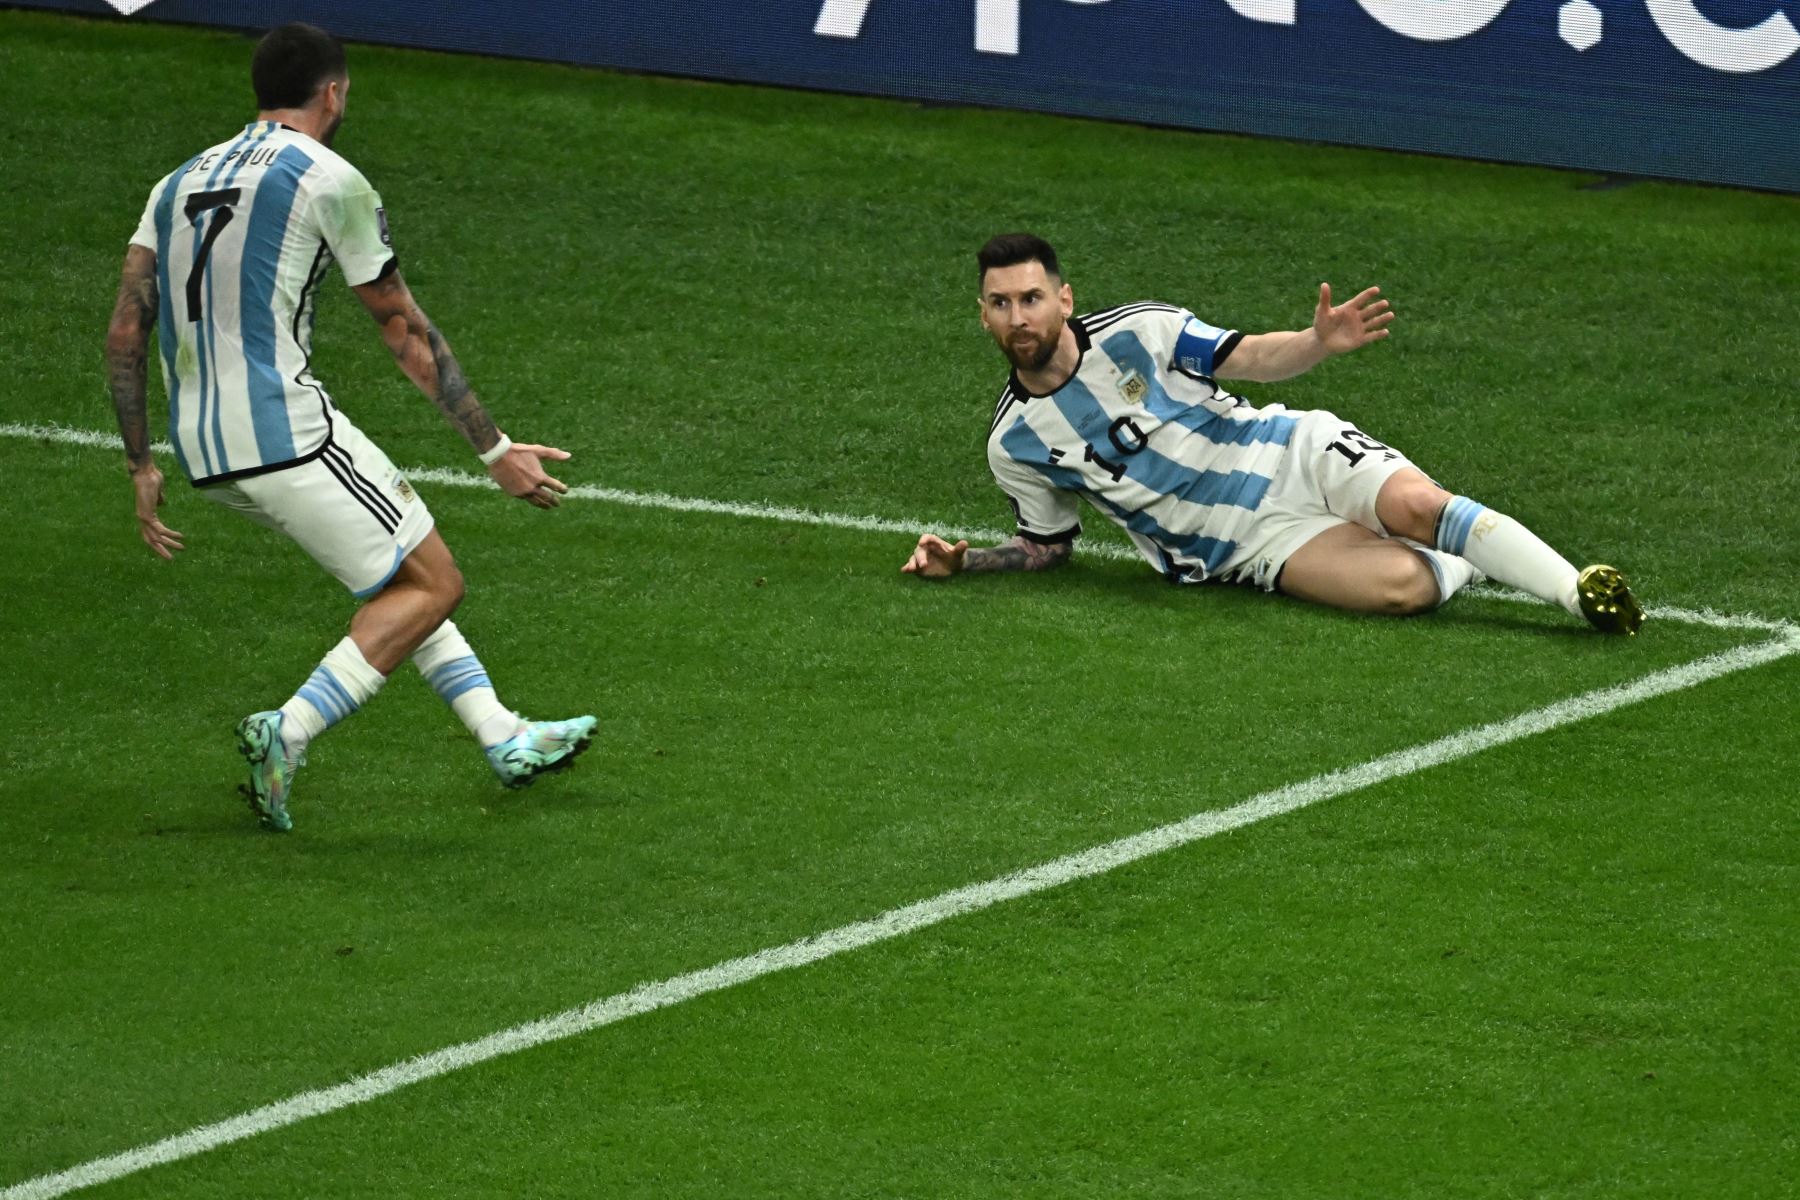 El delantero argentino Lionel Messi celebra marcar el primer gol de su equipo durante el partido de fútbol final de la Copa Mundial Qatar 2022 entre Argentina y Francia en el Estadio Lusail en Lusail, al norte de Doha, el 18 de diciembre de 2022.
Foto: AFP